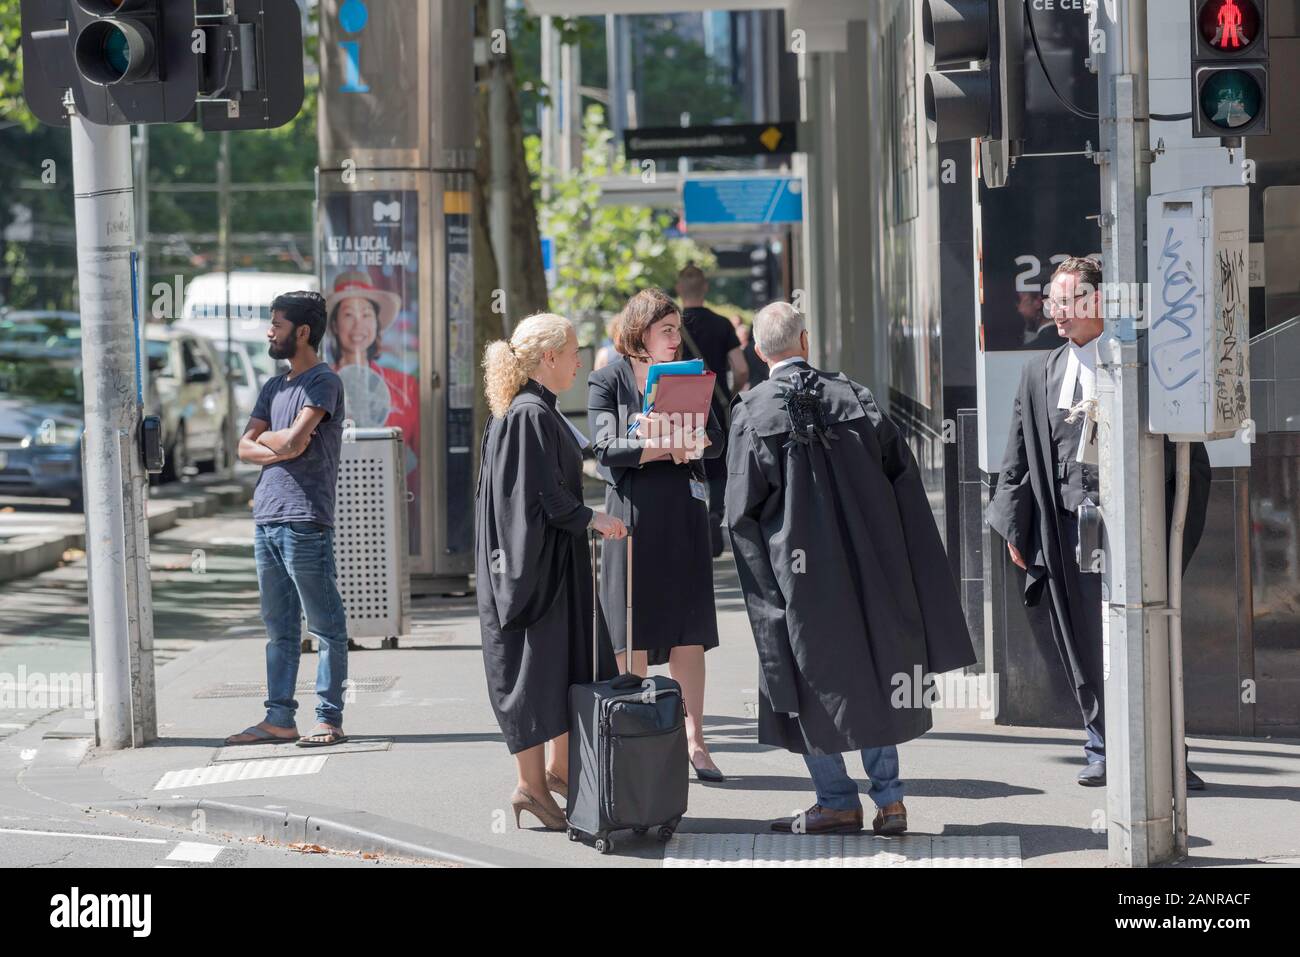 Avocats et juristes vêtus de noir robes cour stand et chat au coin d'une rue à Melbourne près de la Cour suprême de Victoria, Australie Banque D'Images